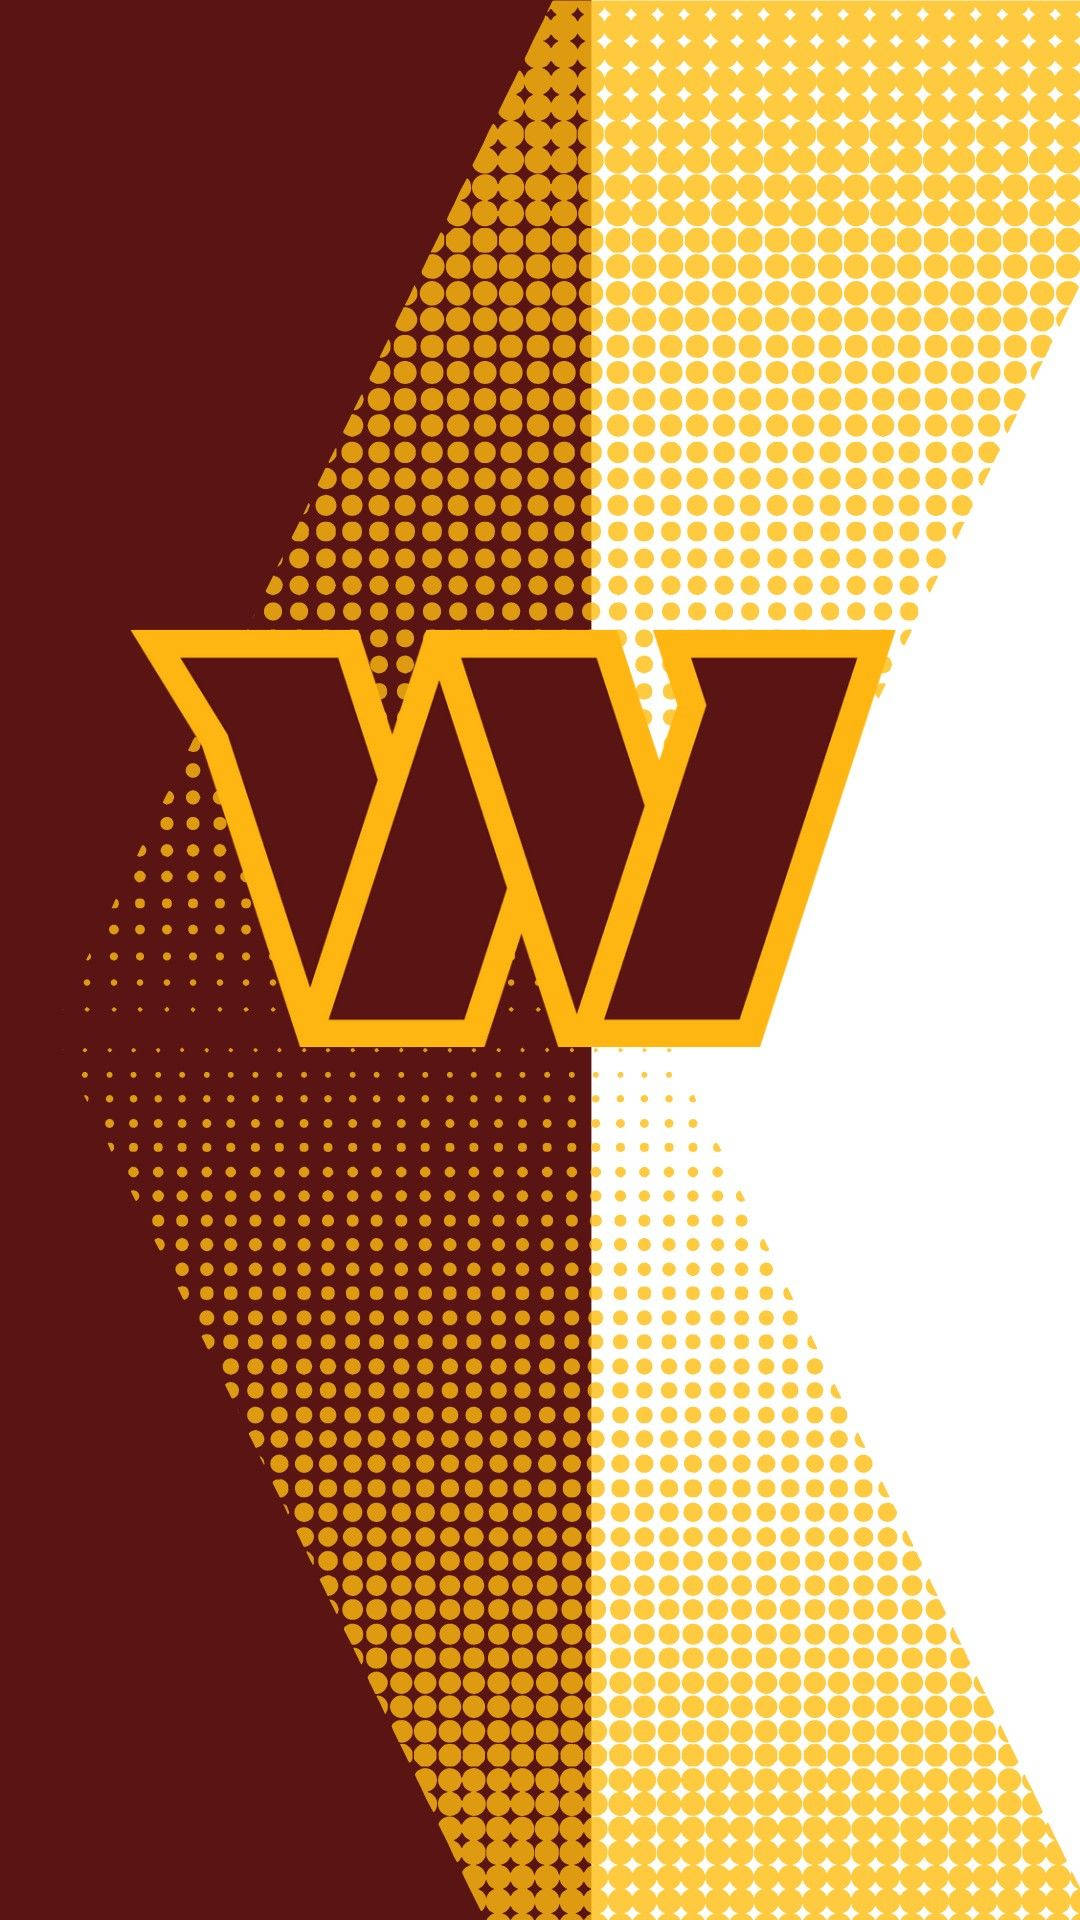 Washington Commanders Mark Logo Background